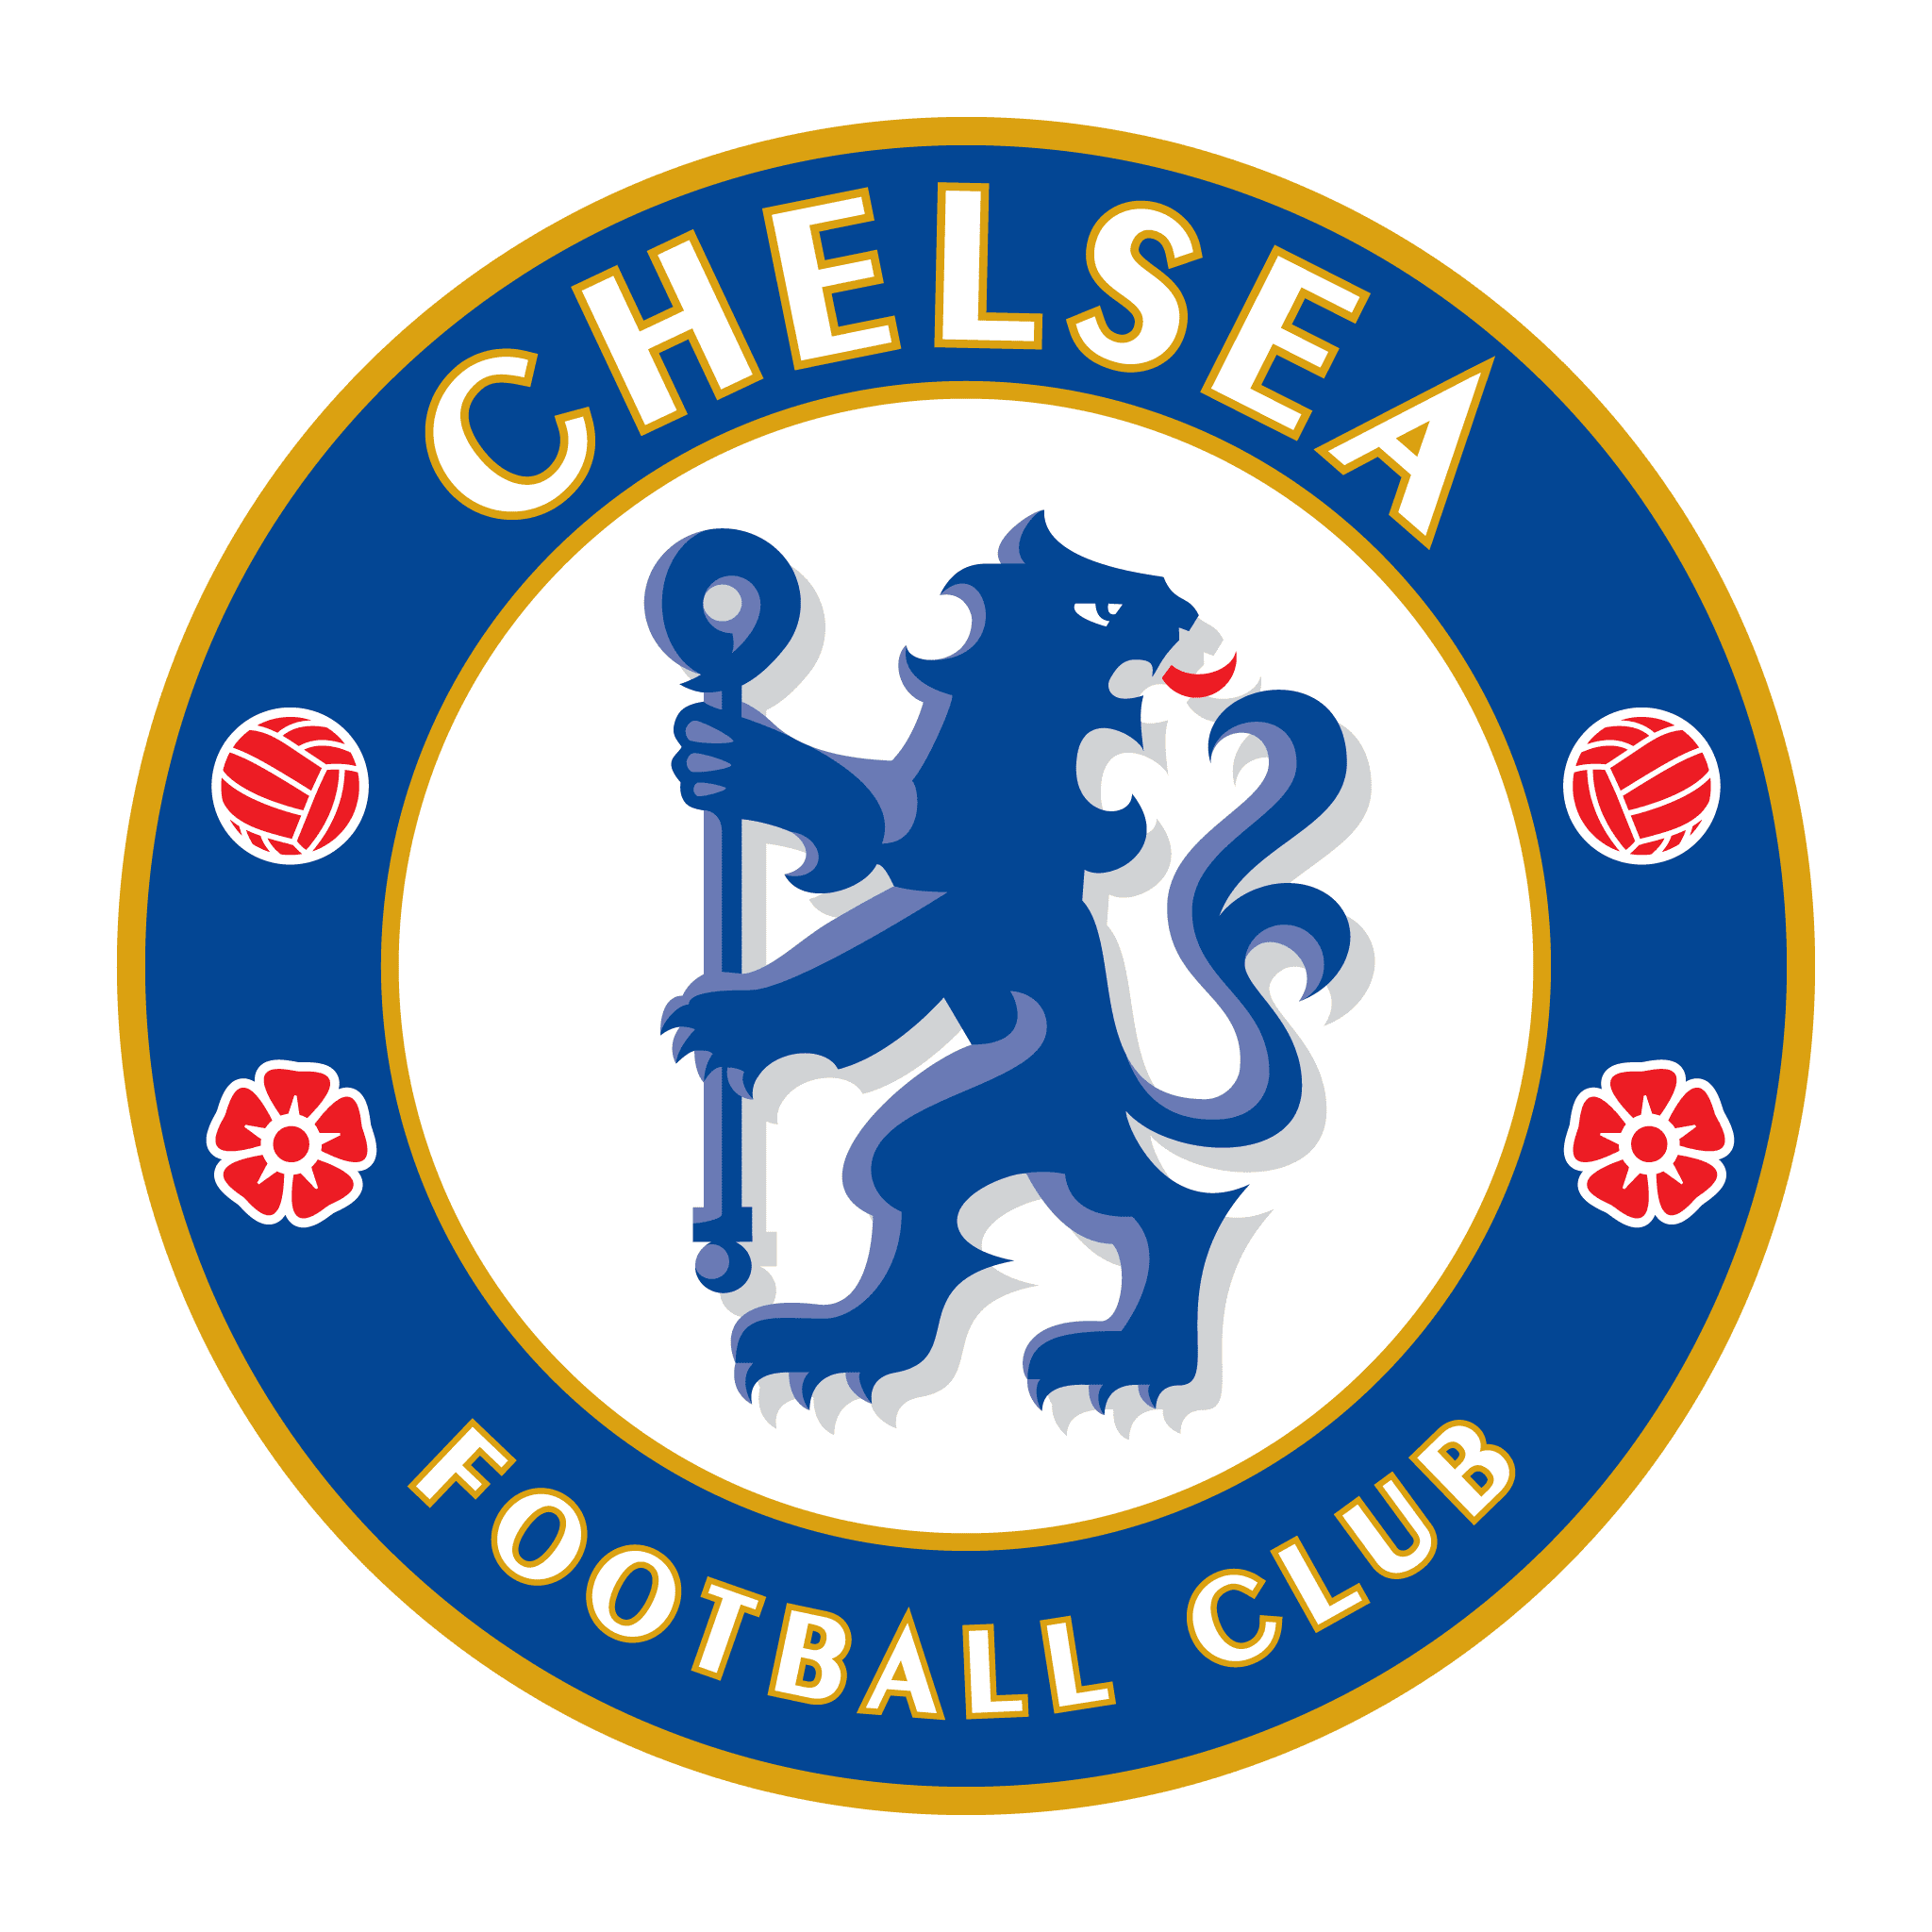 CLB Bóng đá Chelsea